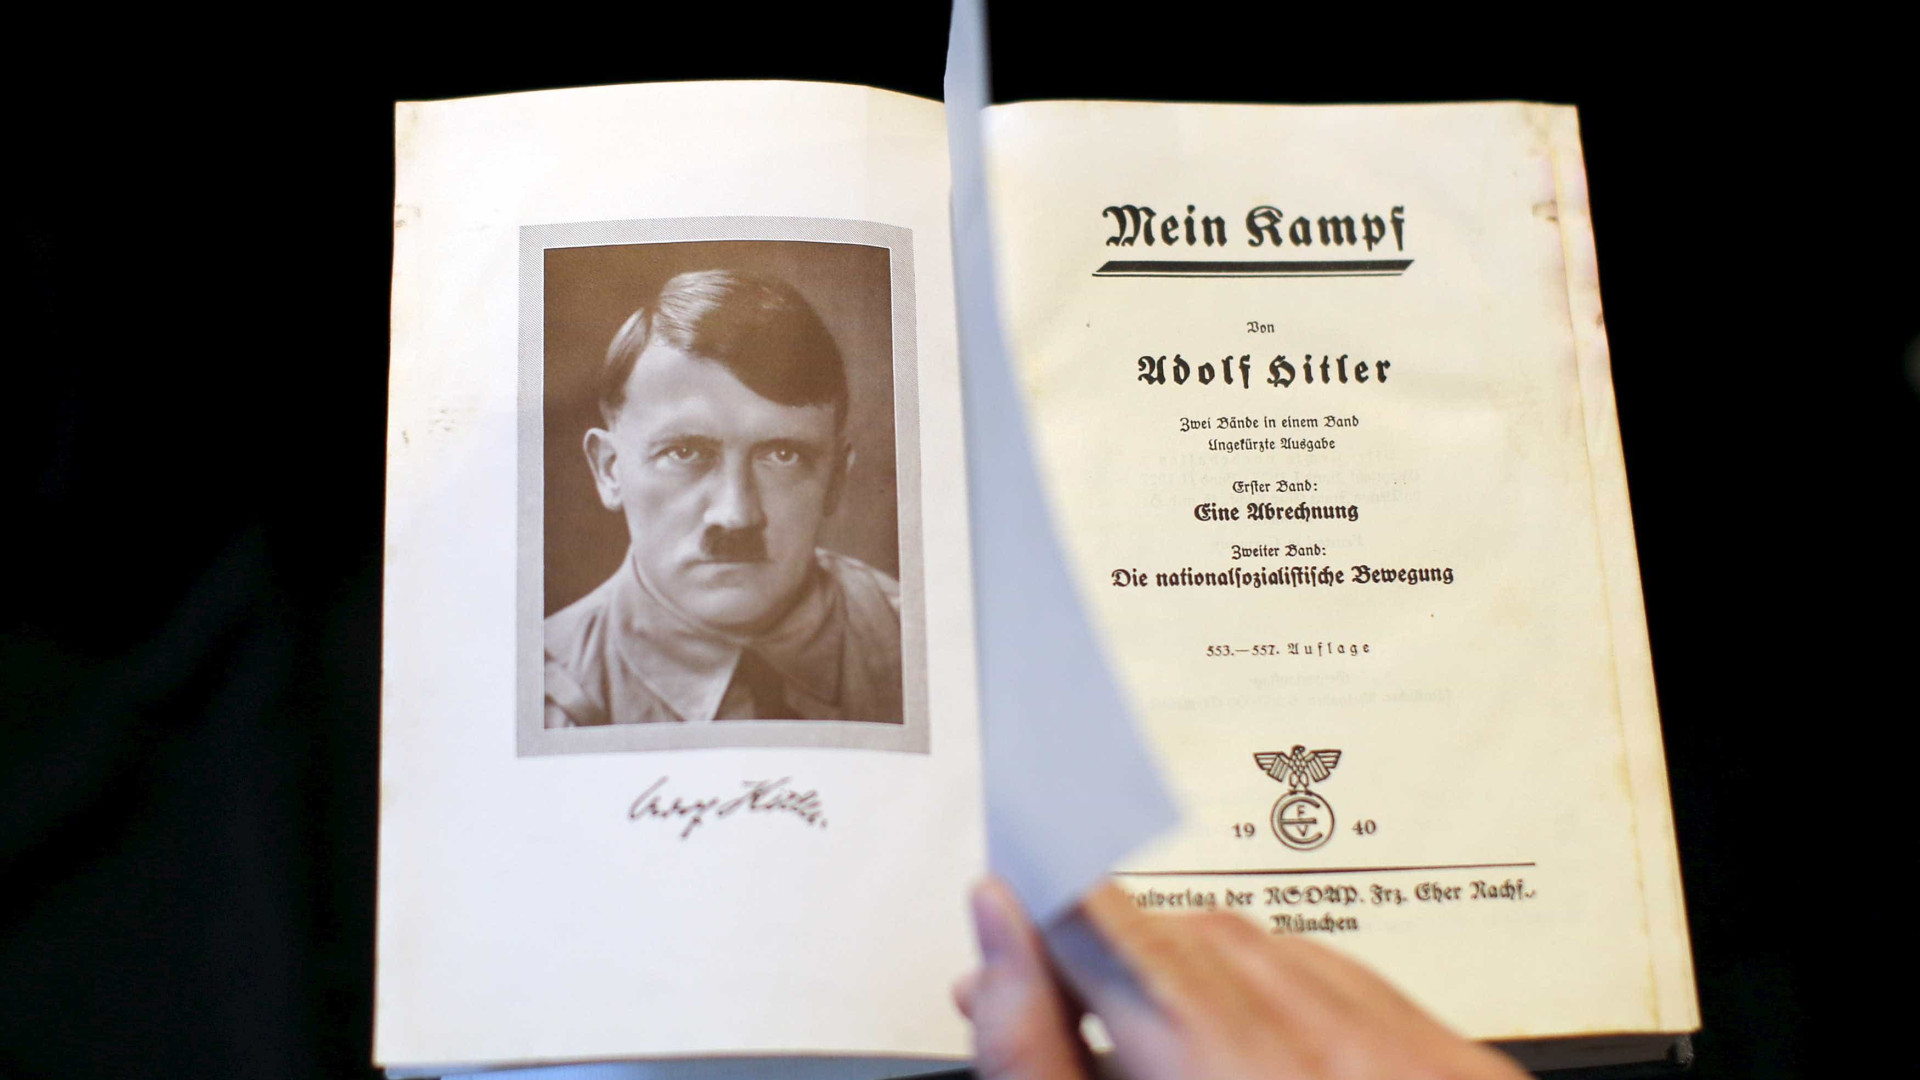 Justiça alemã investiga 
reedição do livro de Adolf Hitler